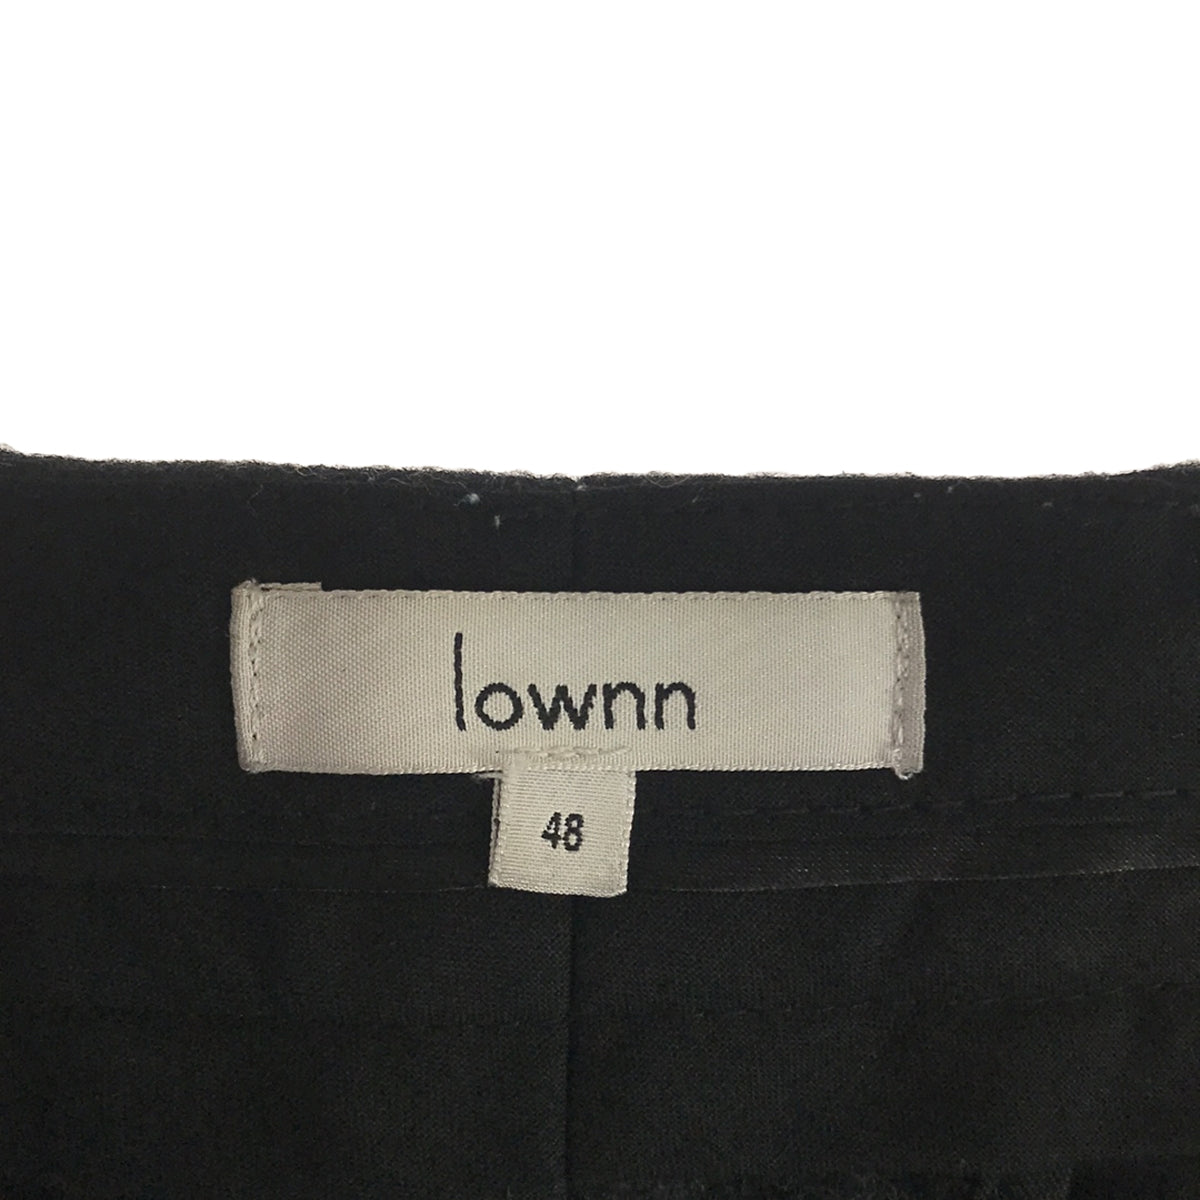 LOWNN / ローン | タック ワイドテーパードスラックス パンツ | 48 